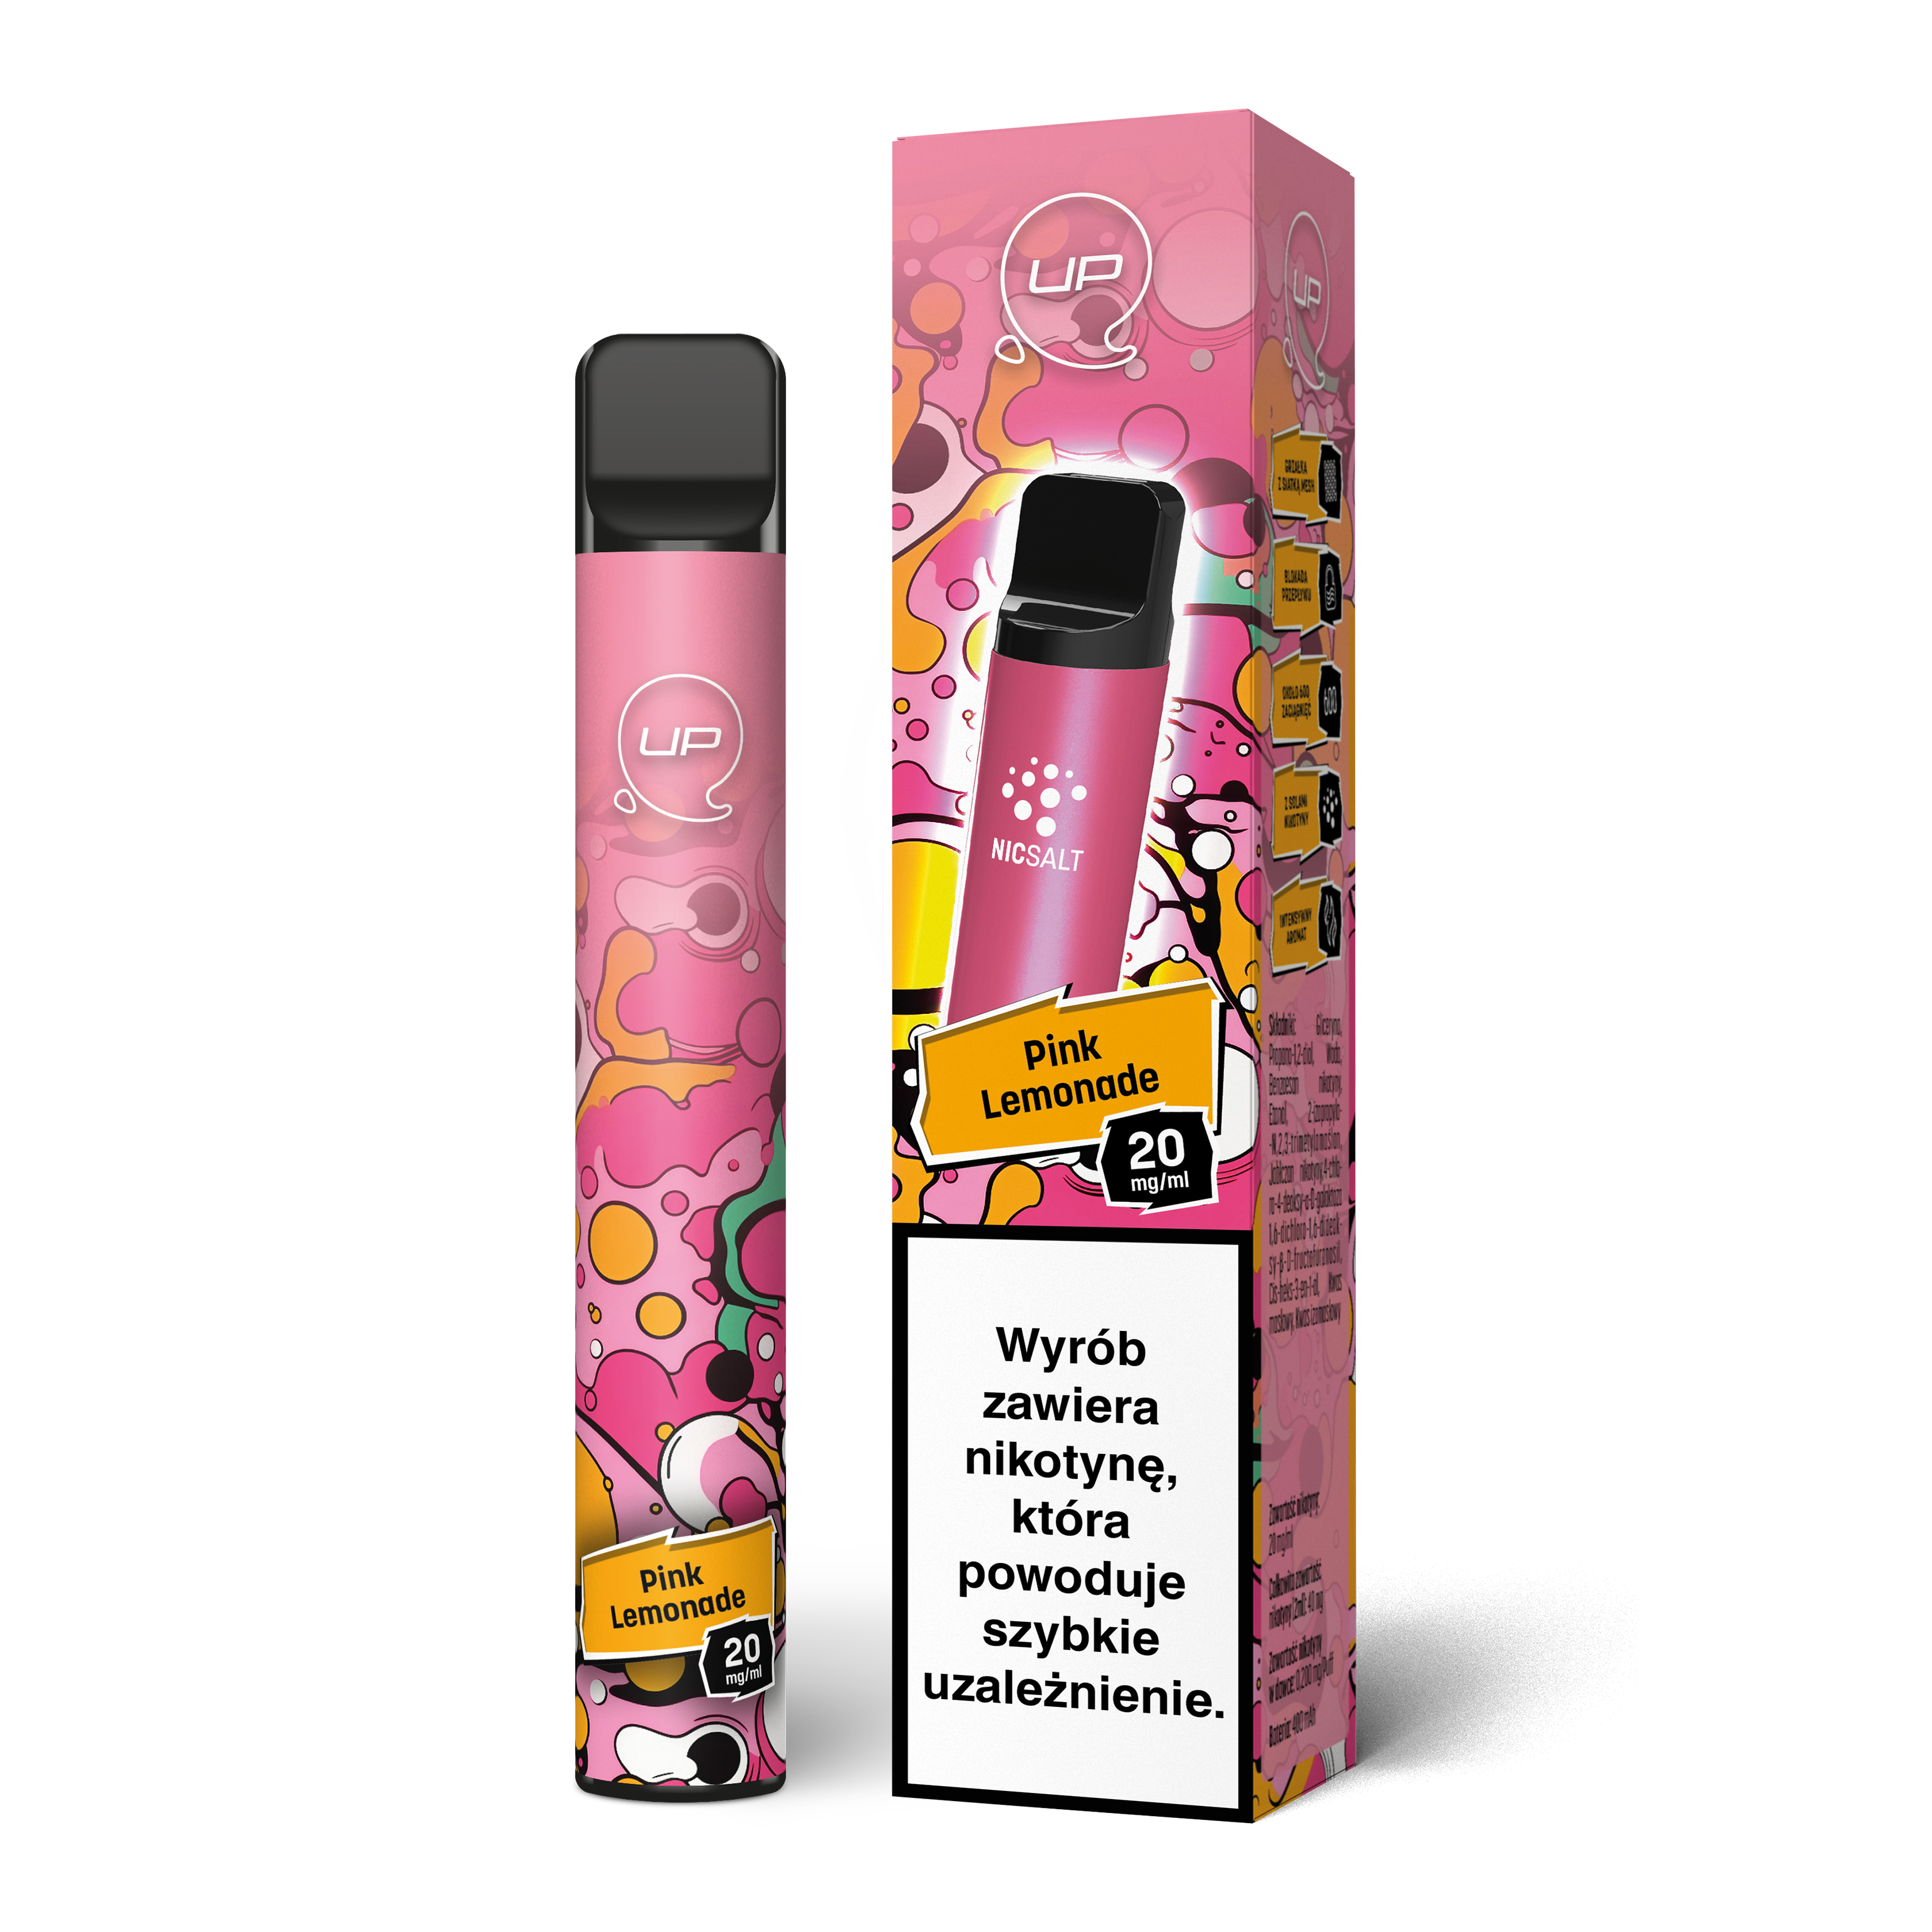 papieros jednorazowy marki up z kartonikiem o smaku pink lemonade